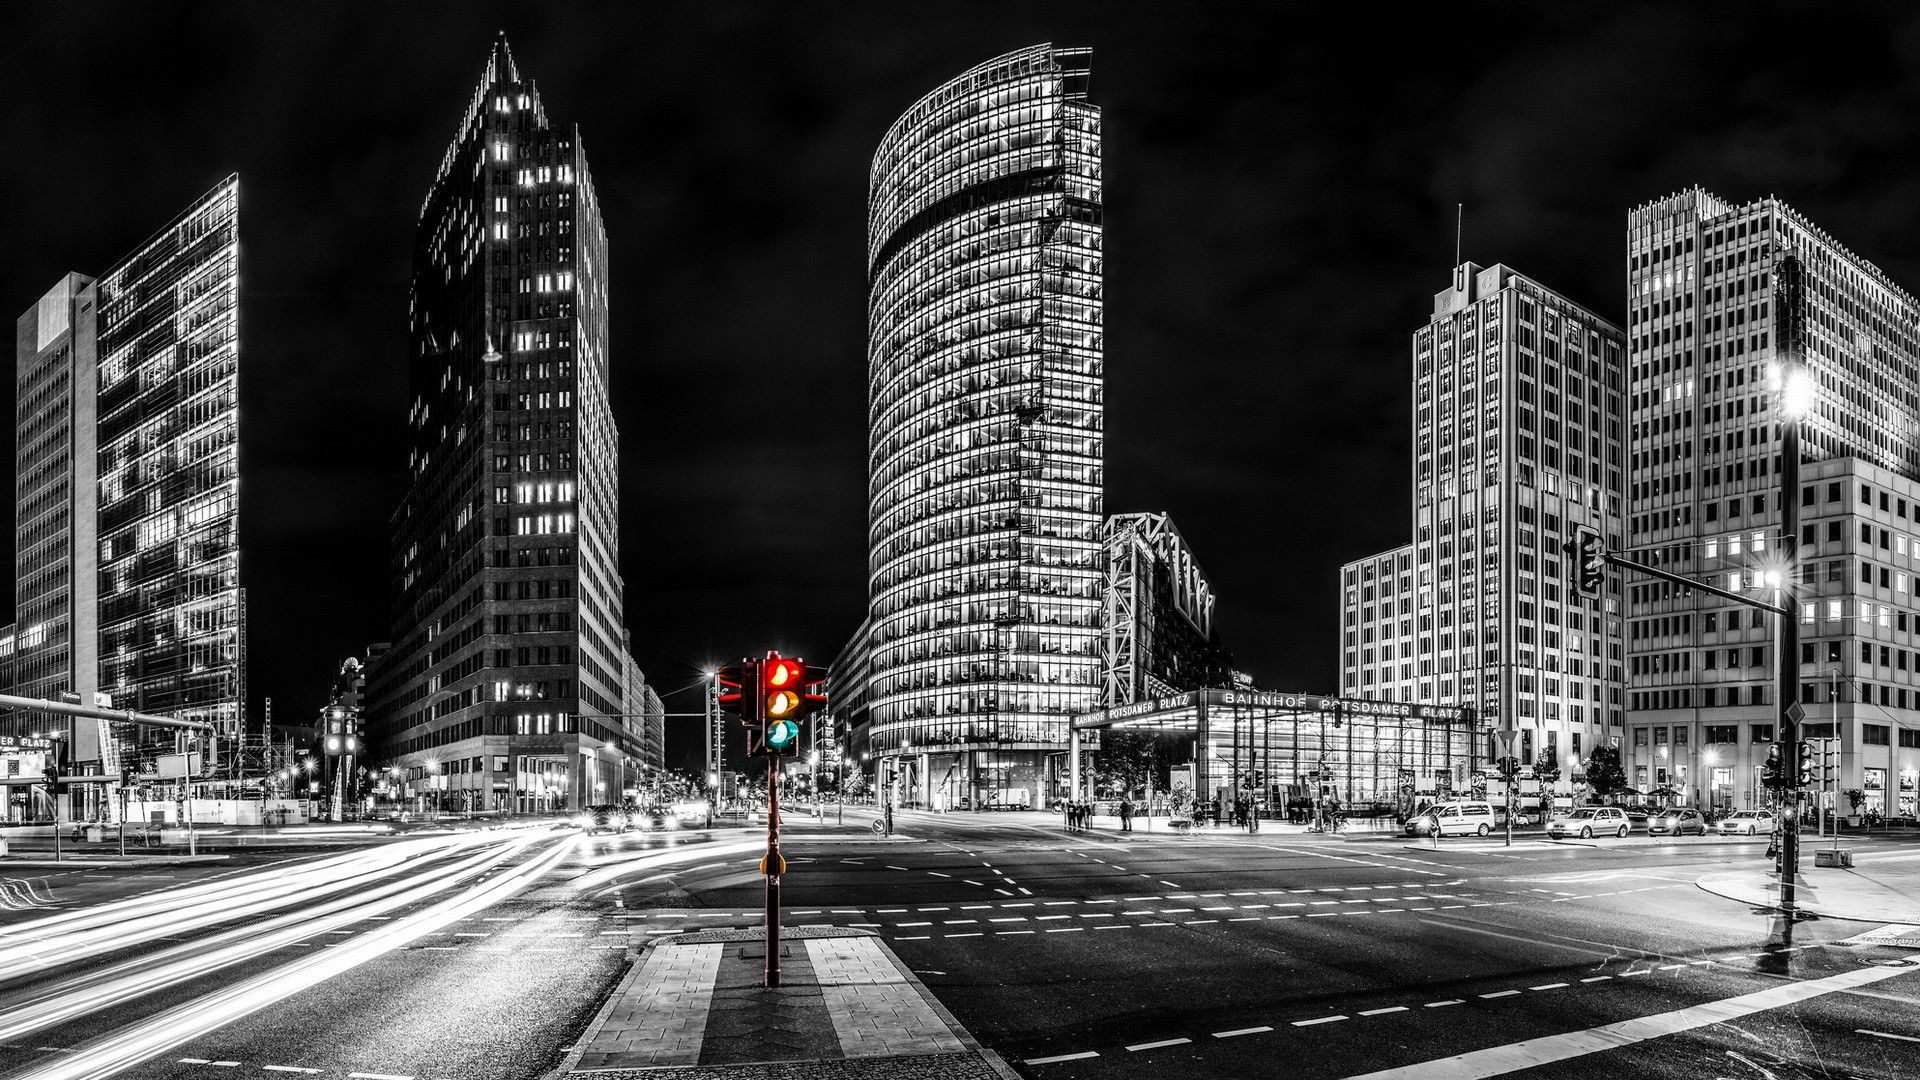 دانلود عکس شهر با ساختمان های بلند و نورانی در شب